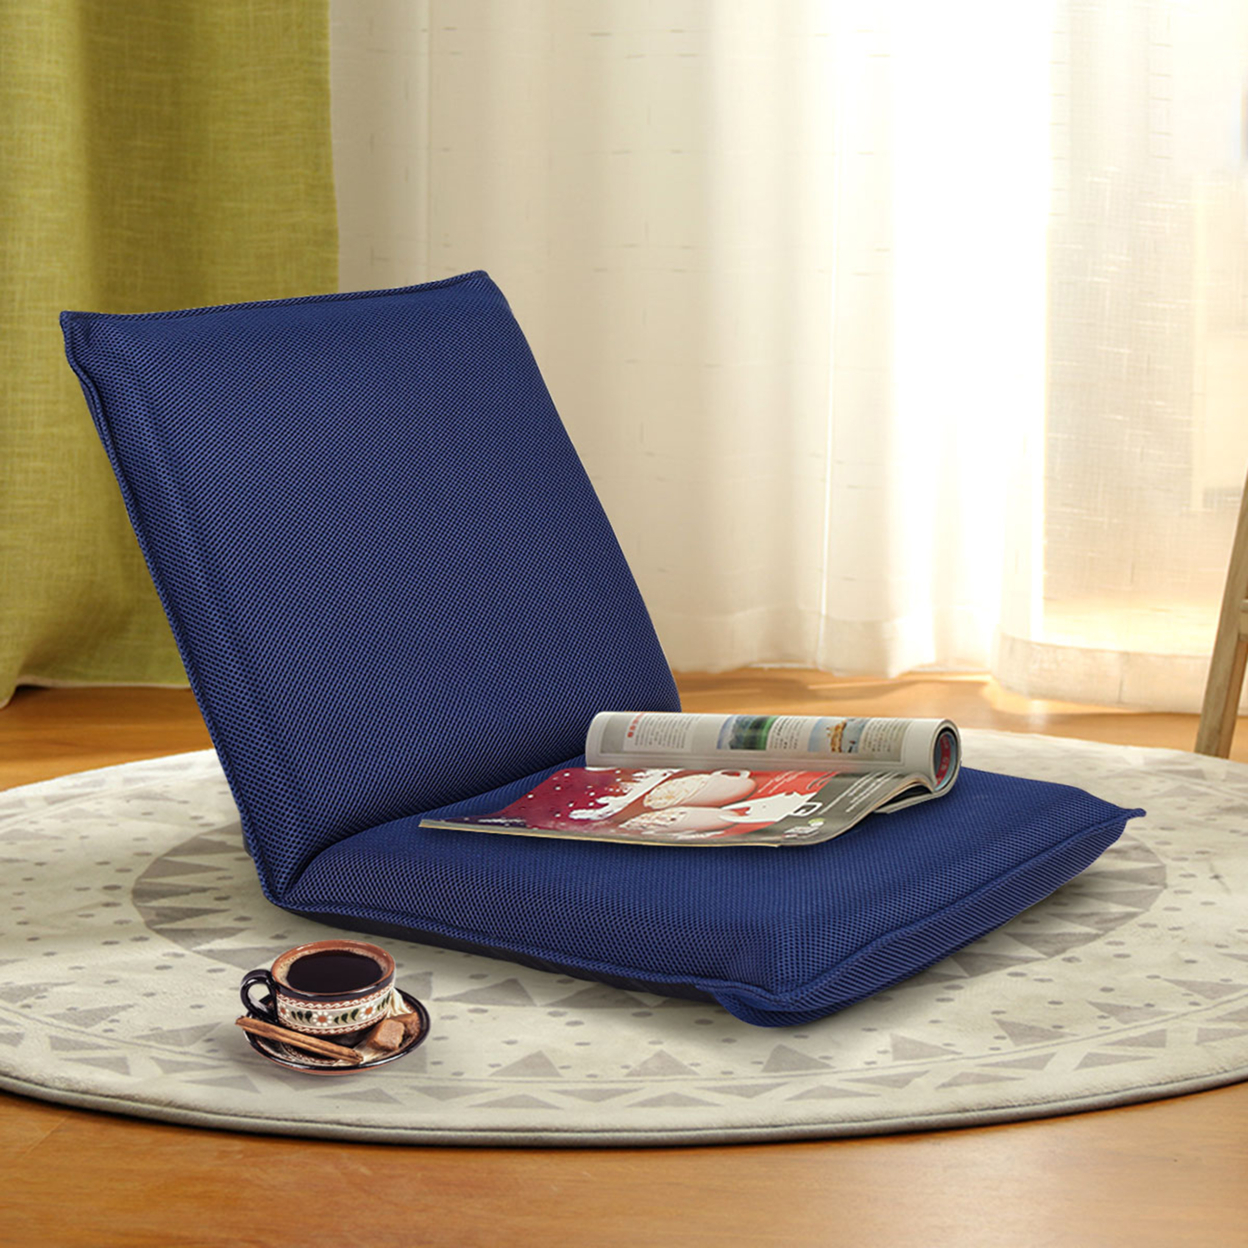 Adjustable 6-Position Floor Chair Folding Lazy Man Sofa Chair Multiangle Navy